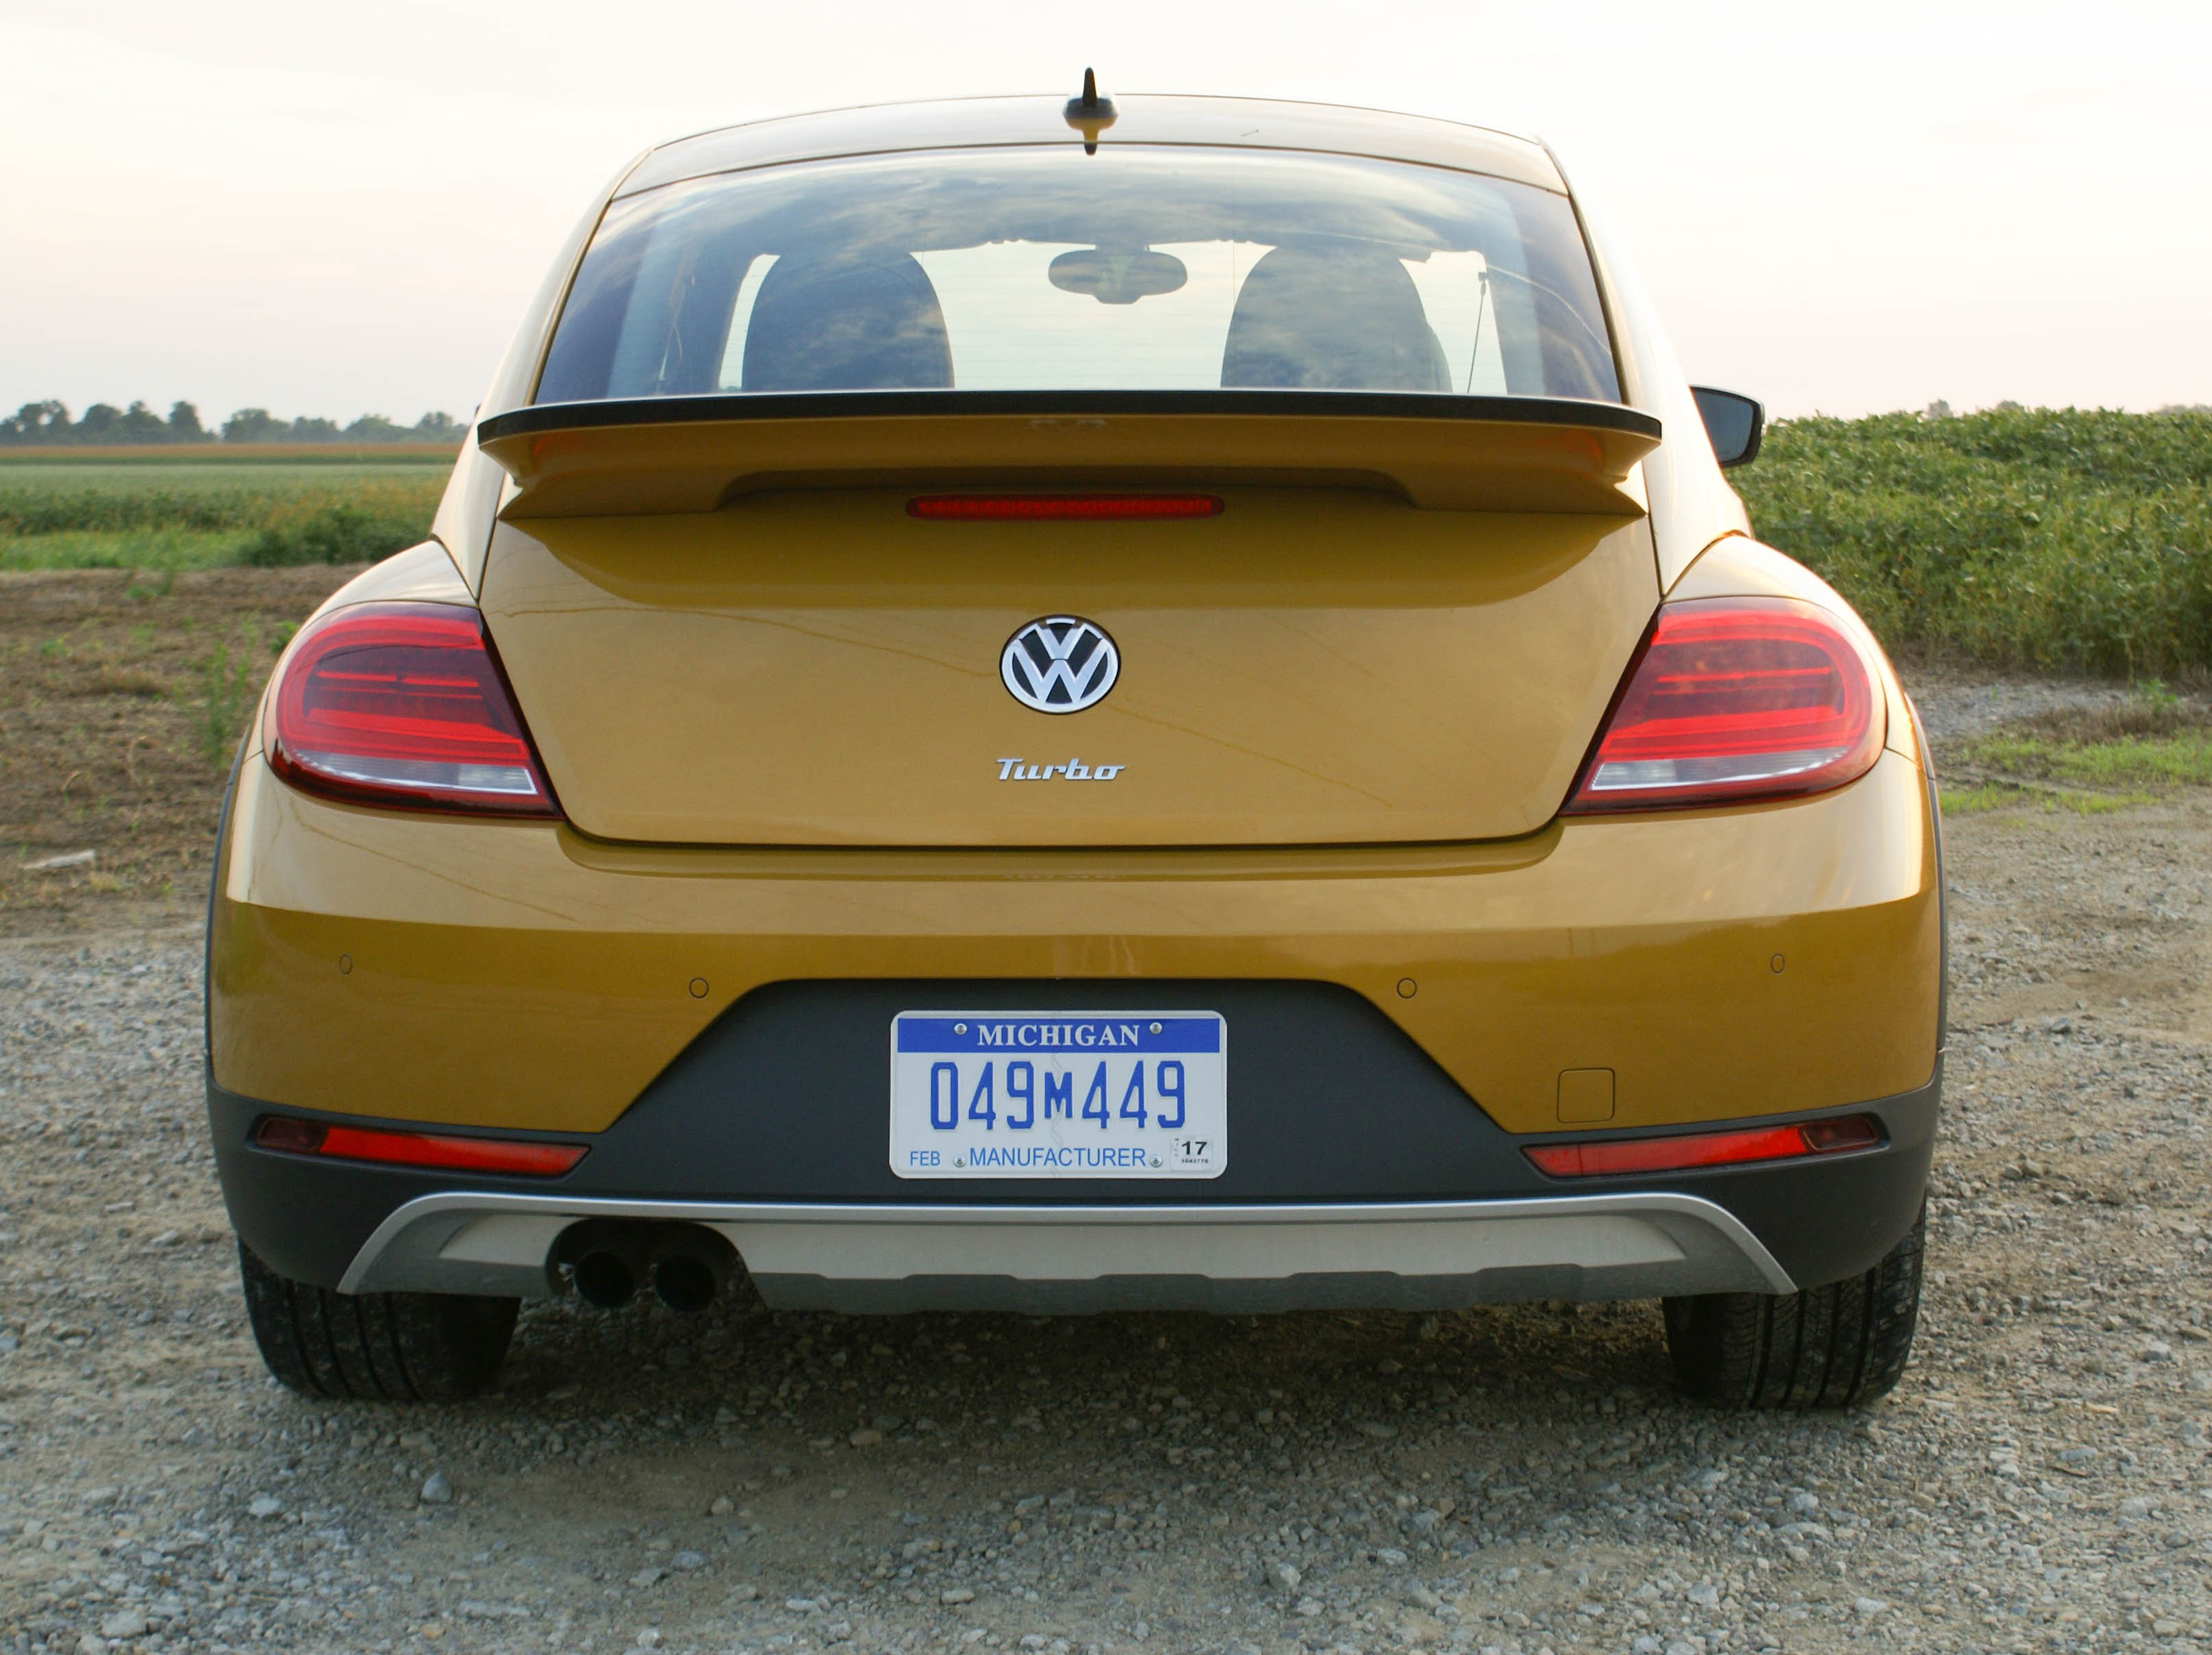 Volkswagen Beetle hd model